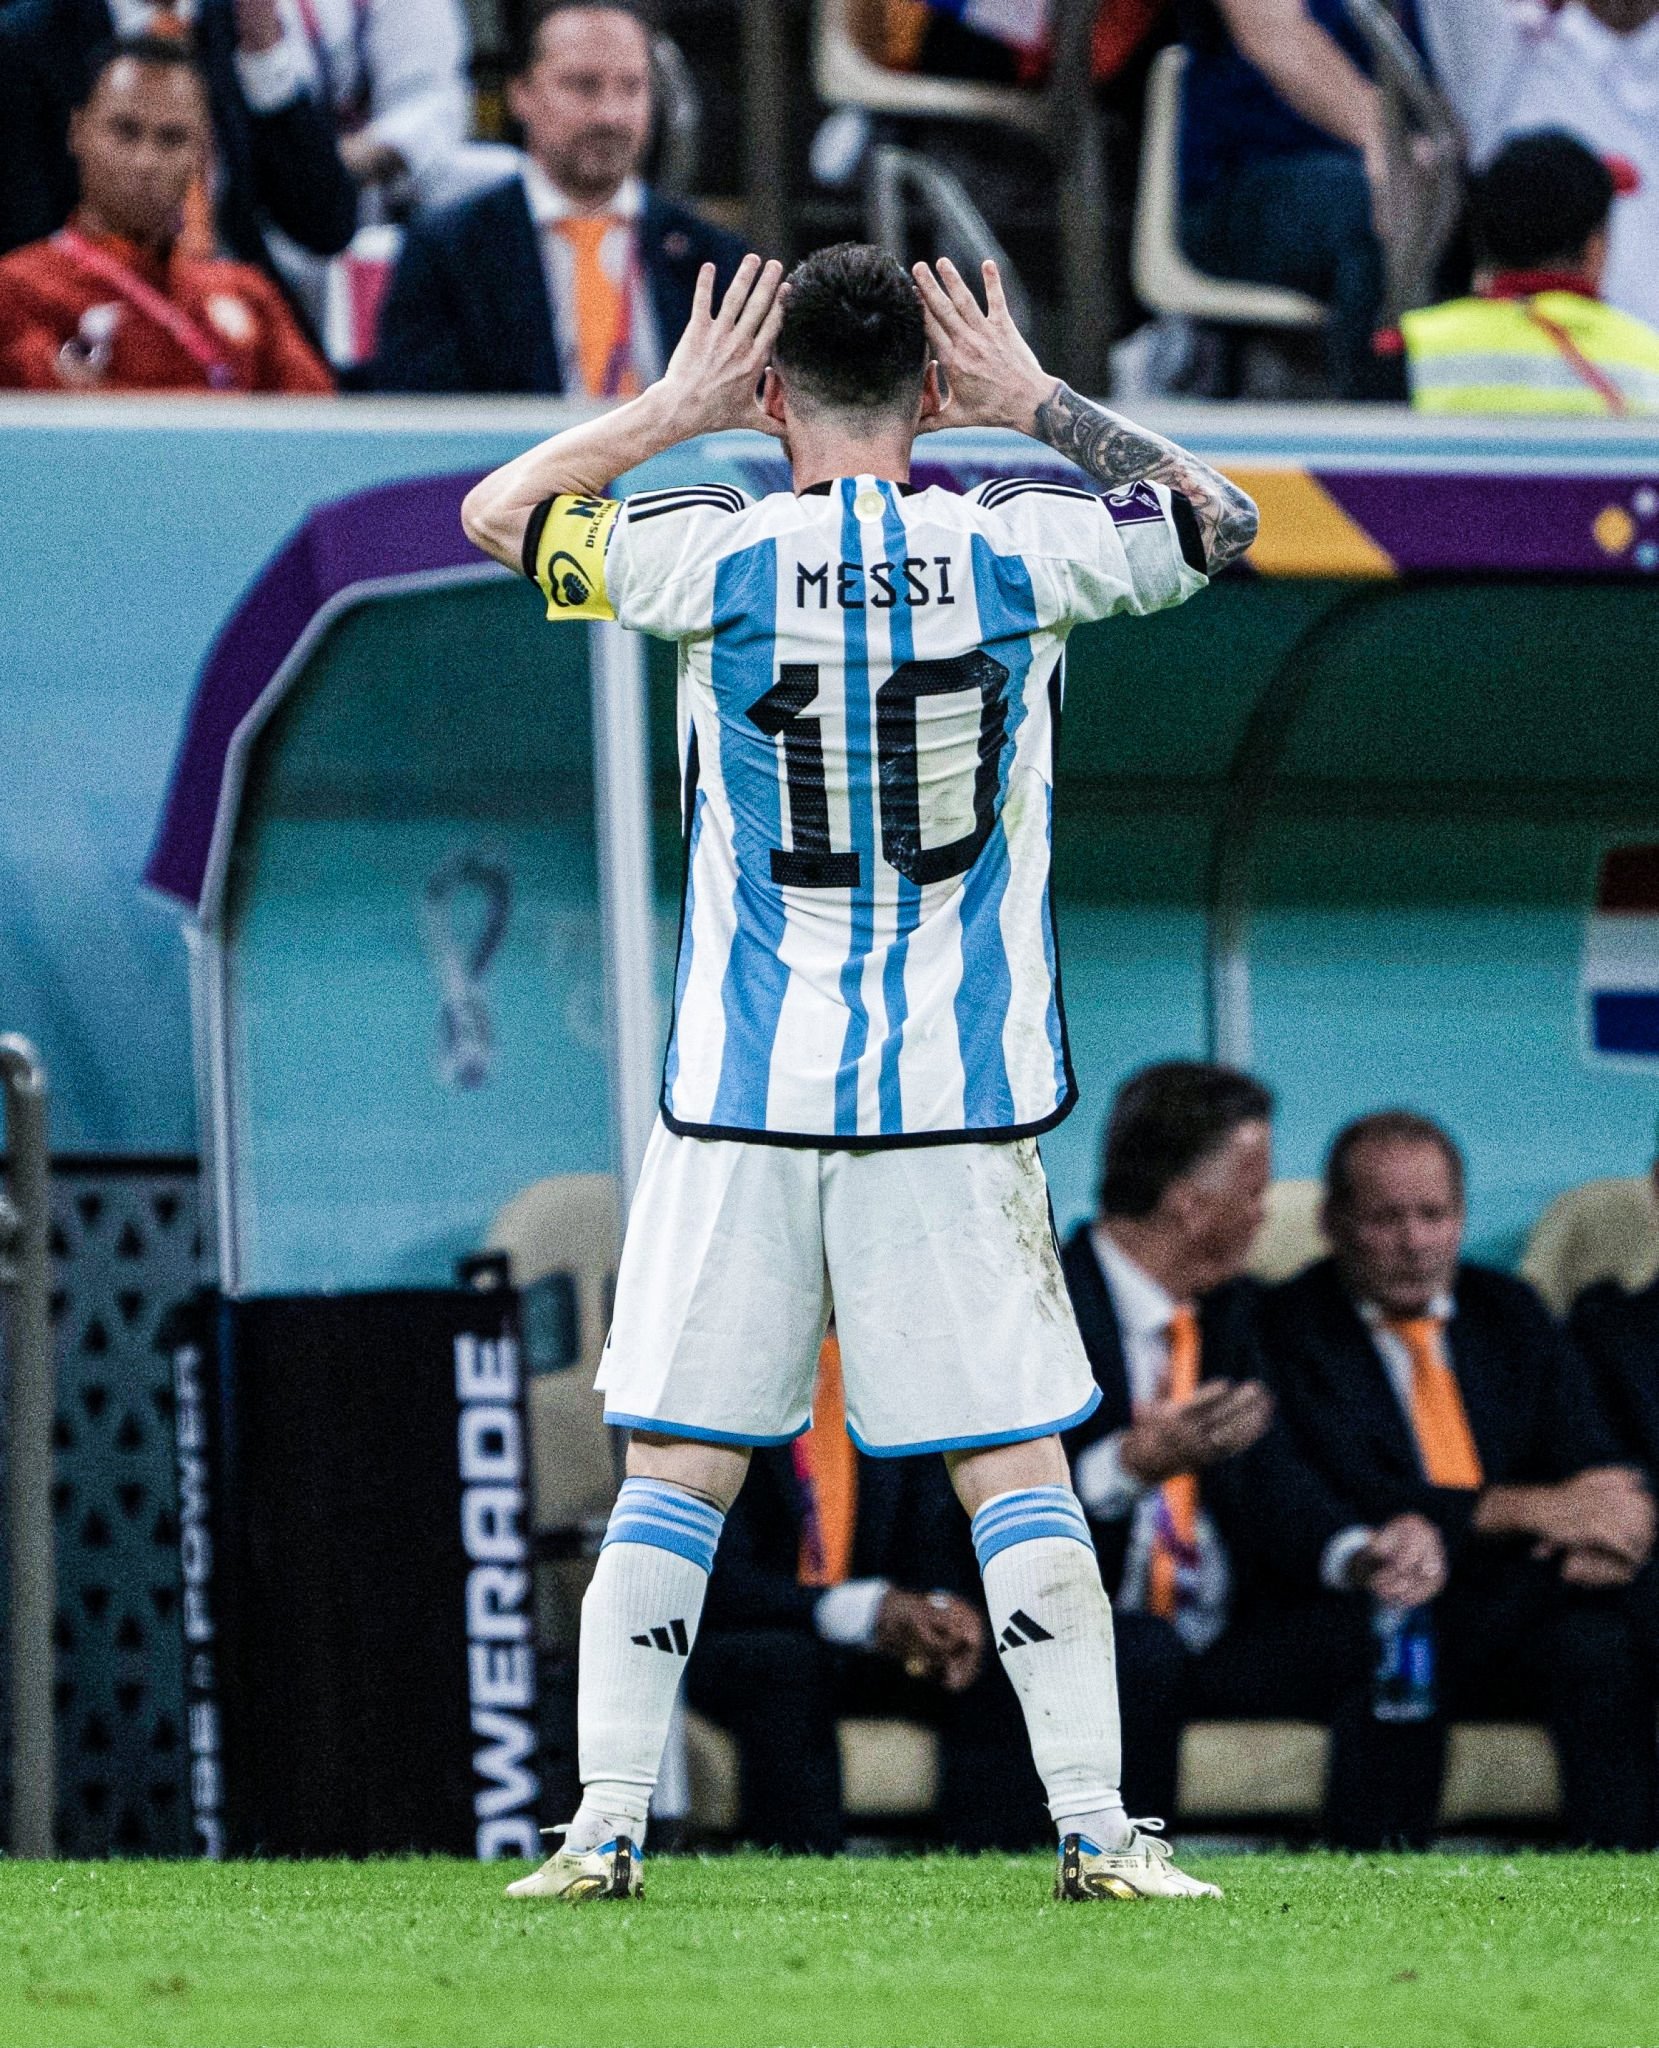 Messi giải thích cho HLV Van Gaal chi tiết về phong cách chơi bóng của mình trong trận đấu với đội tuyển Hà Lan. Mặc dù bị cắt đứt nhiều lần, nhưng Messi vẫn thể hiện được khả năng của mình và giúp Argentina giành chiến thắng.